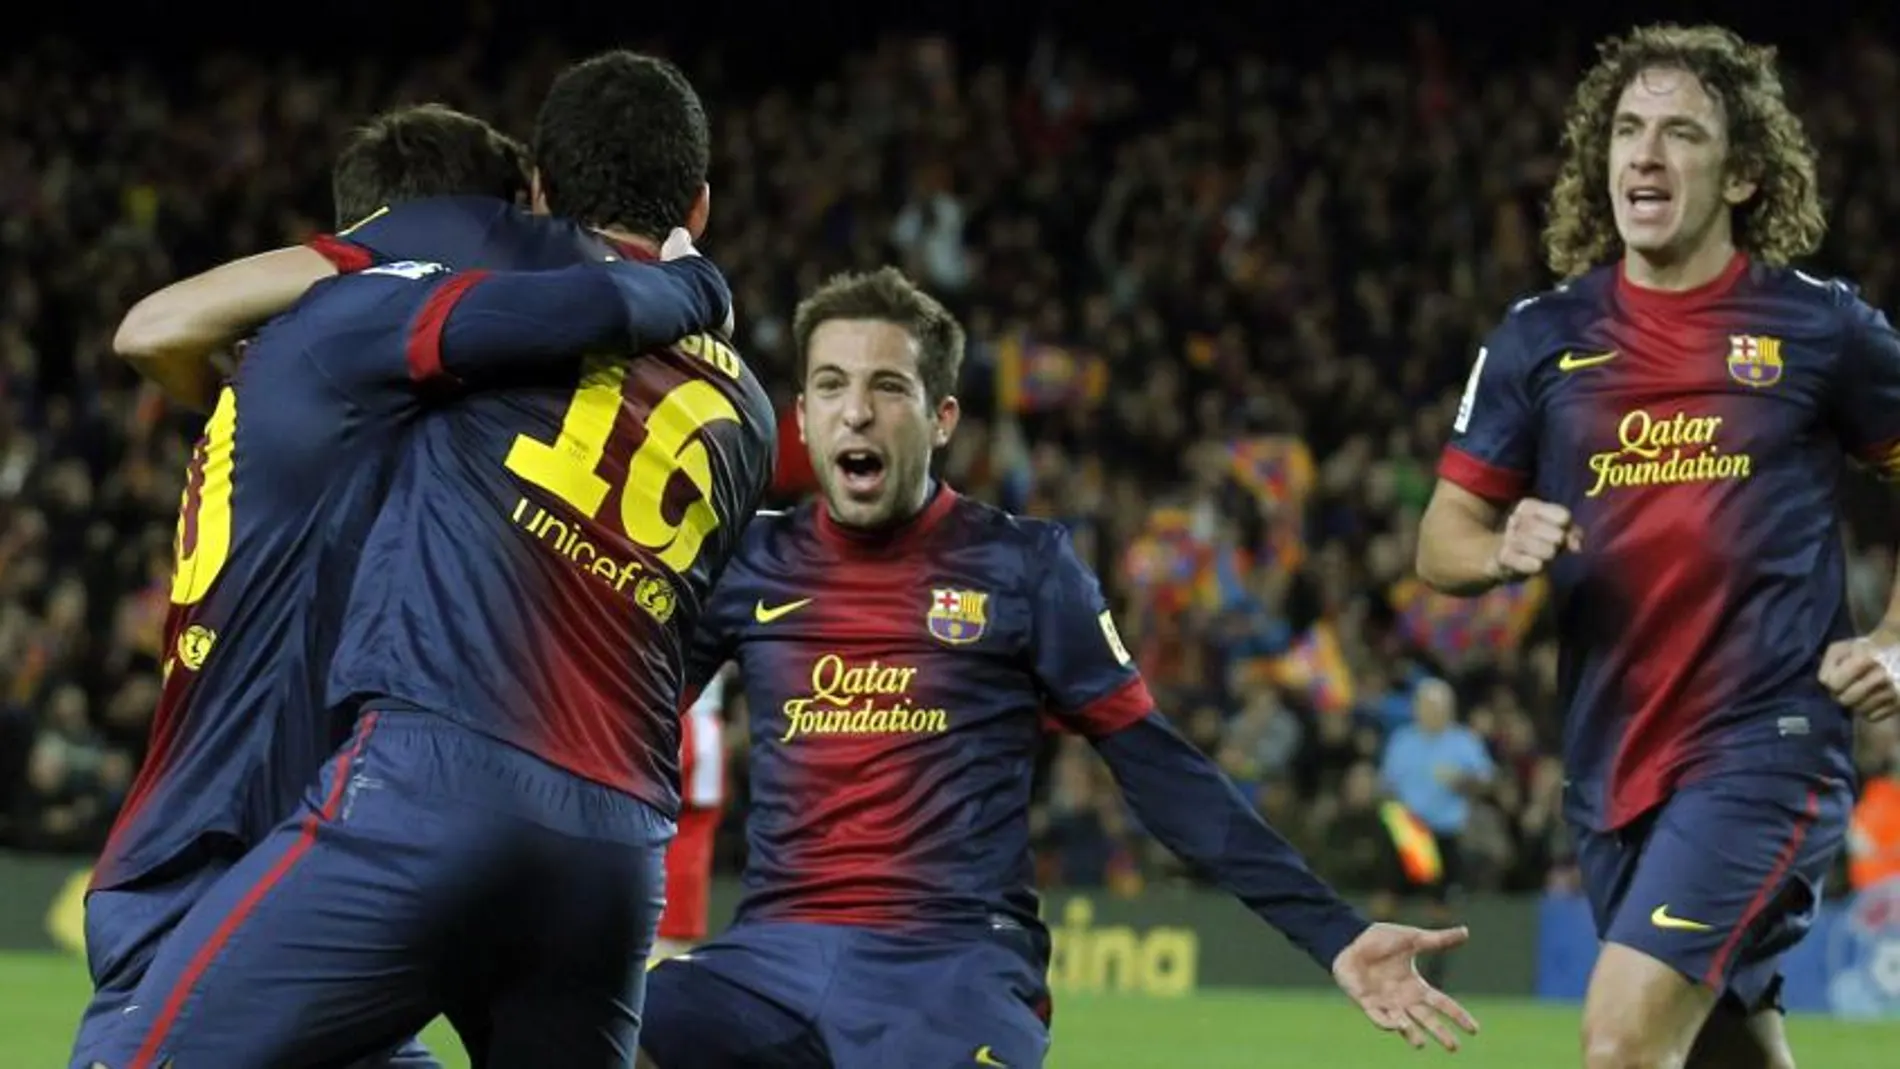 Busquet, Messi, alba y Pujol celebran un gol